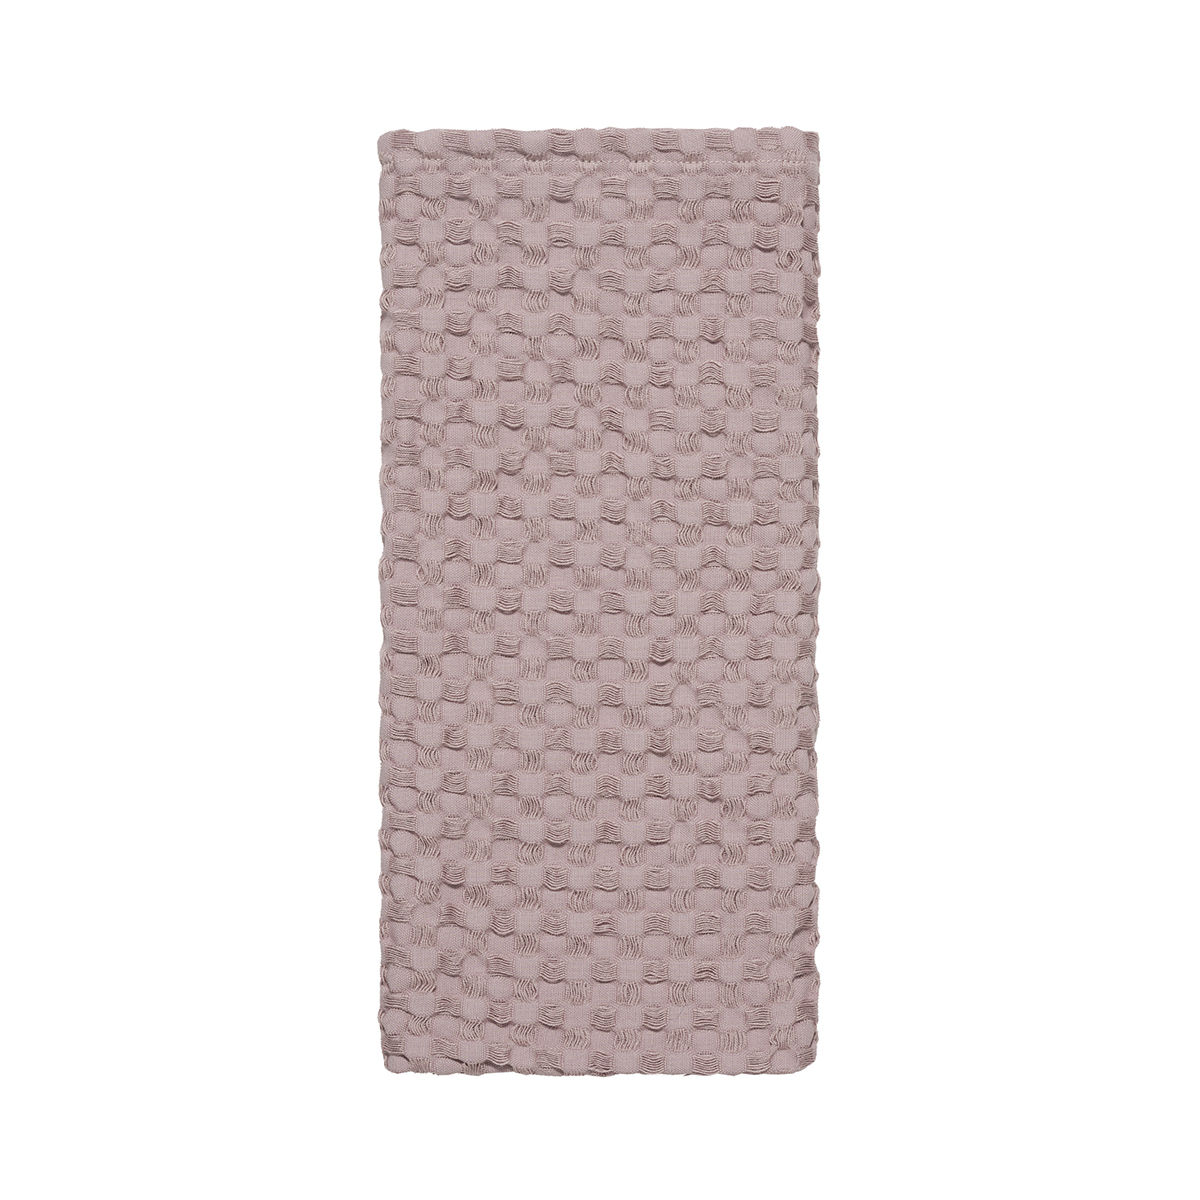 Ποτηρόπανο Πικέ (40×60) Kentia Loft Lavare 14 Dusty Pink